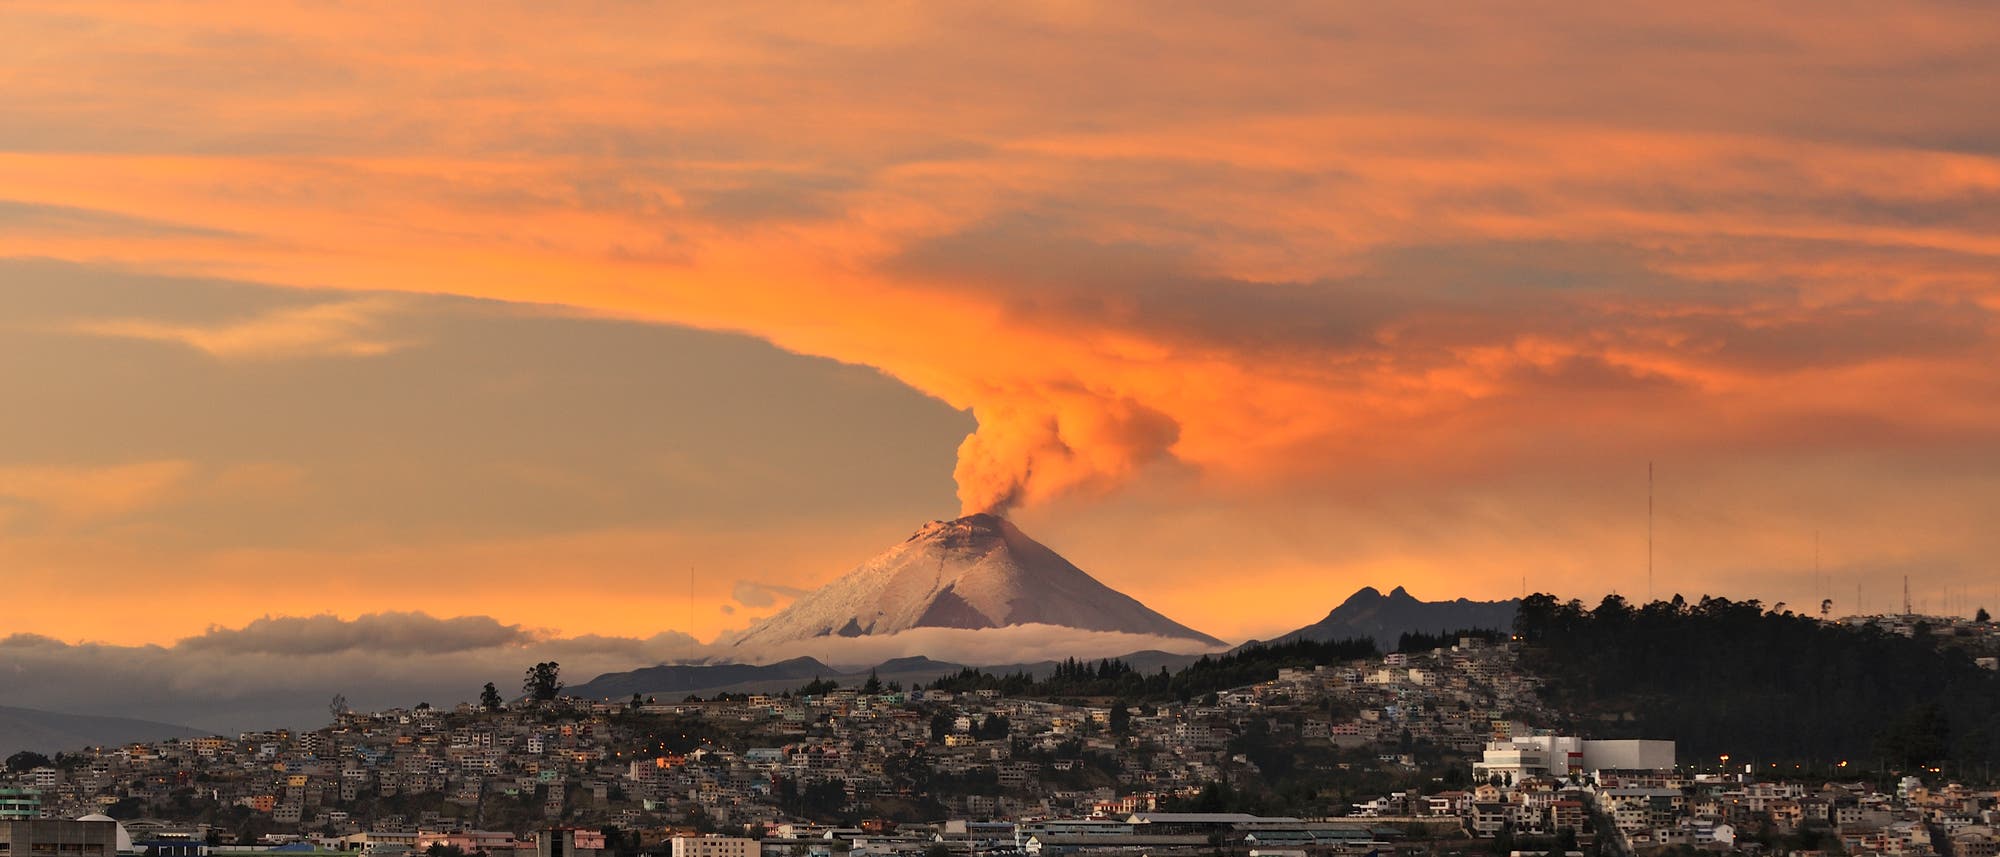 Ausbruch des Vulkans Cotopaxi nahe der Stadt Quito. Im Vordergrund das Stadtzentrum, im Hintergrund ein rauchender Vulkankegel.